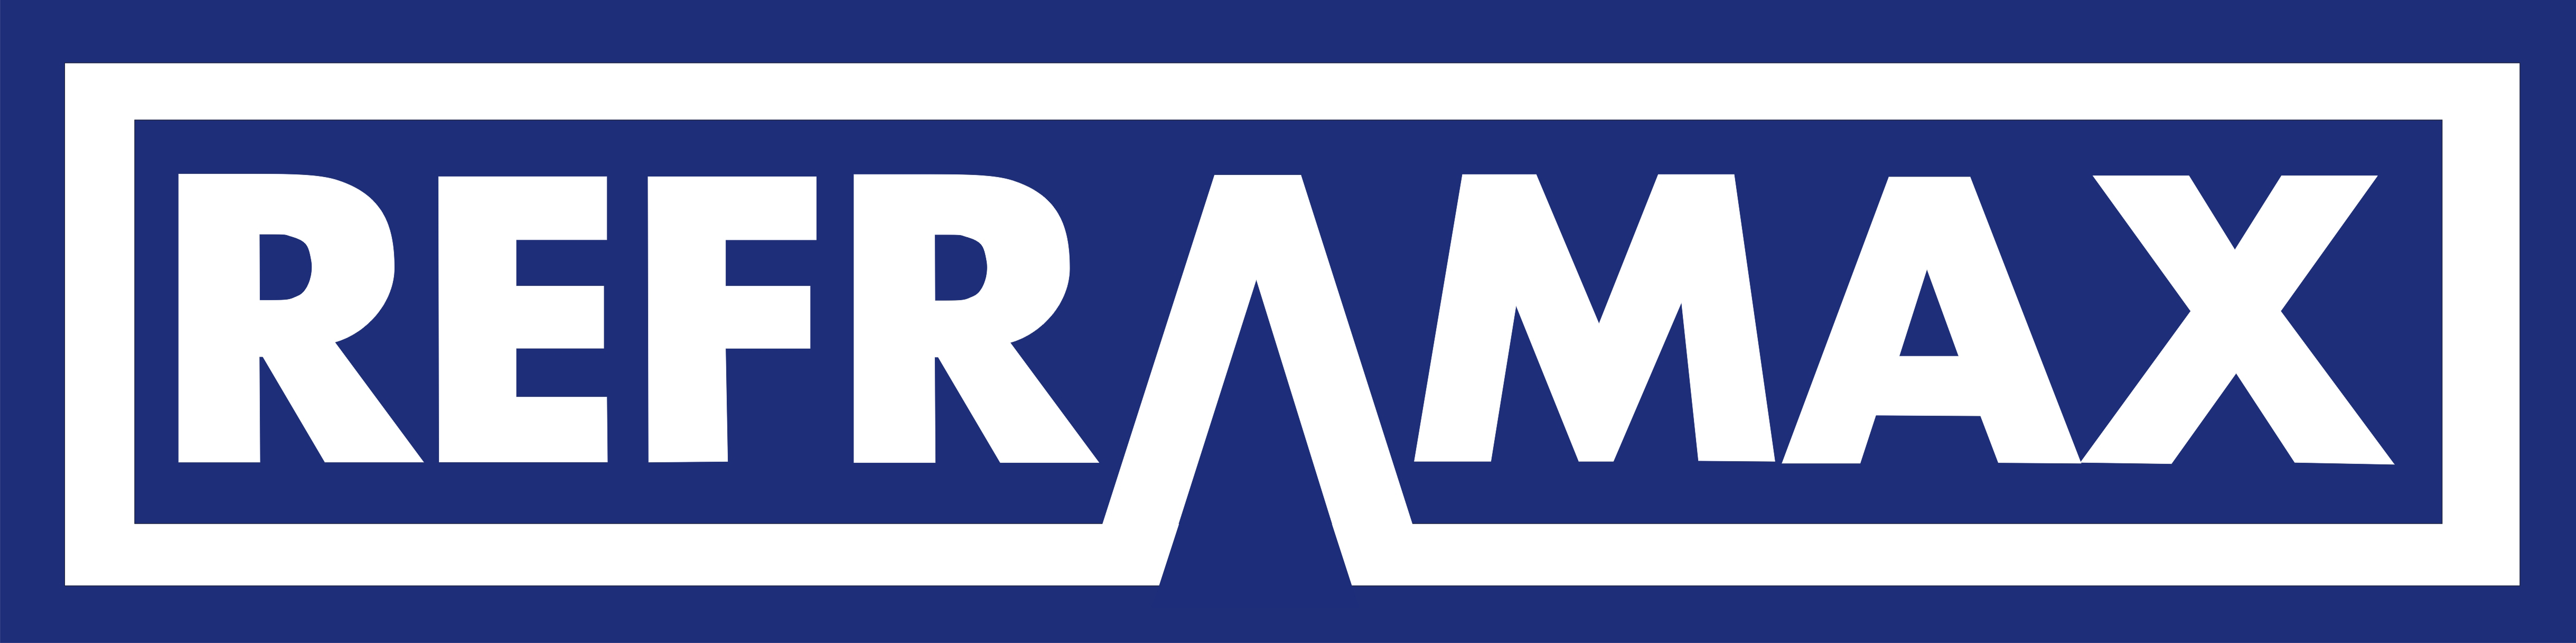 Logomarca da Reframax